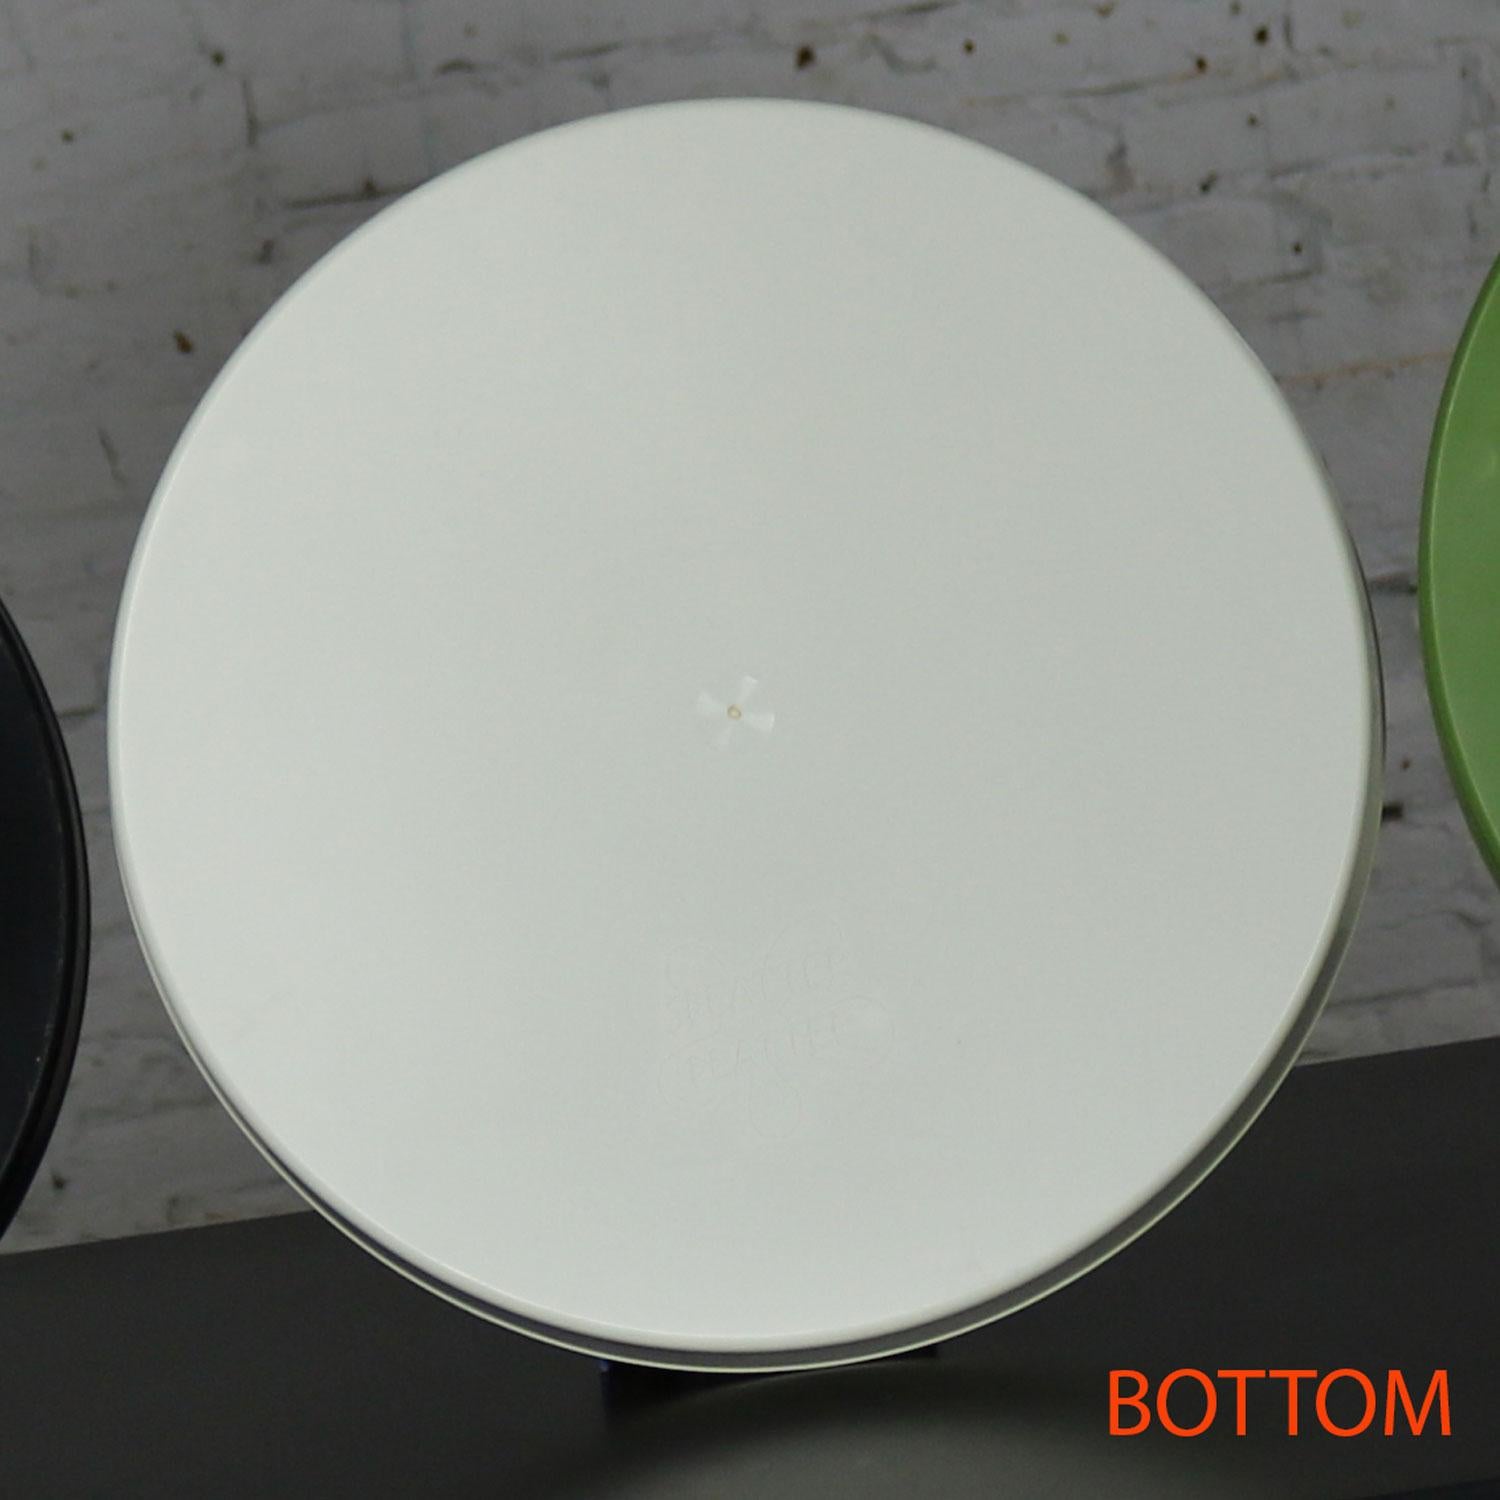 Fin du 20e siècle The Modernity Trays Plateaux ronds en plastique blanc Splatter Platters by Sabe's en vente